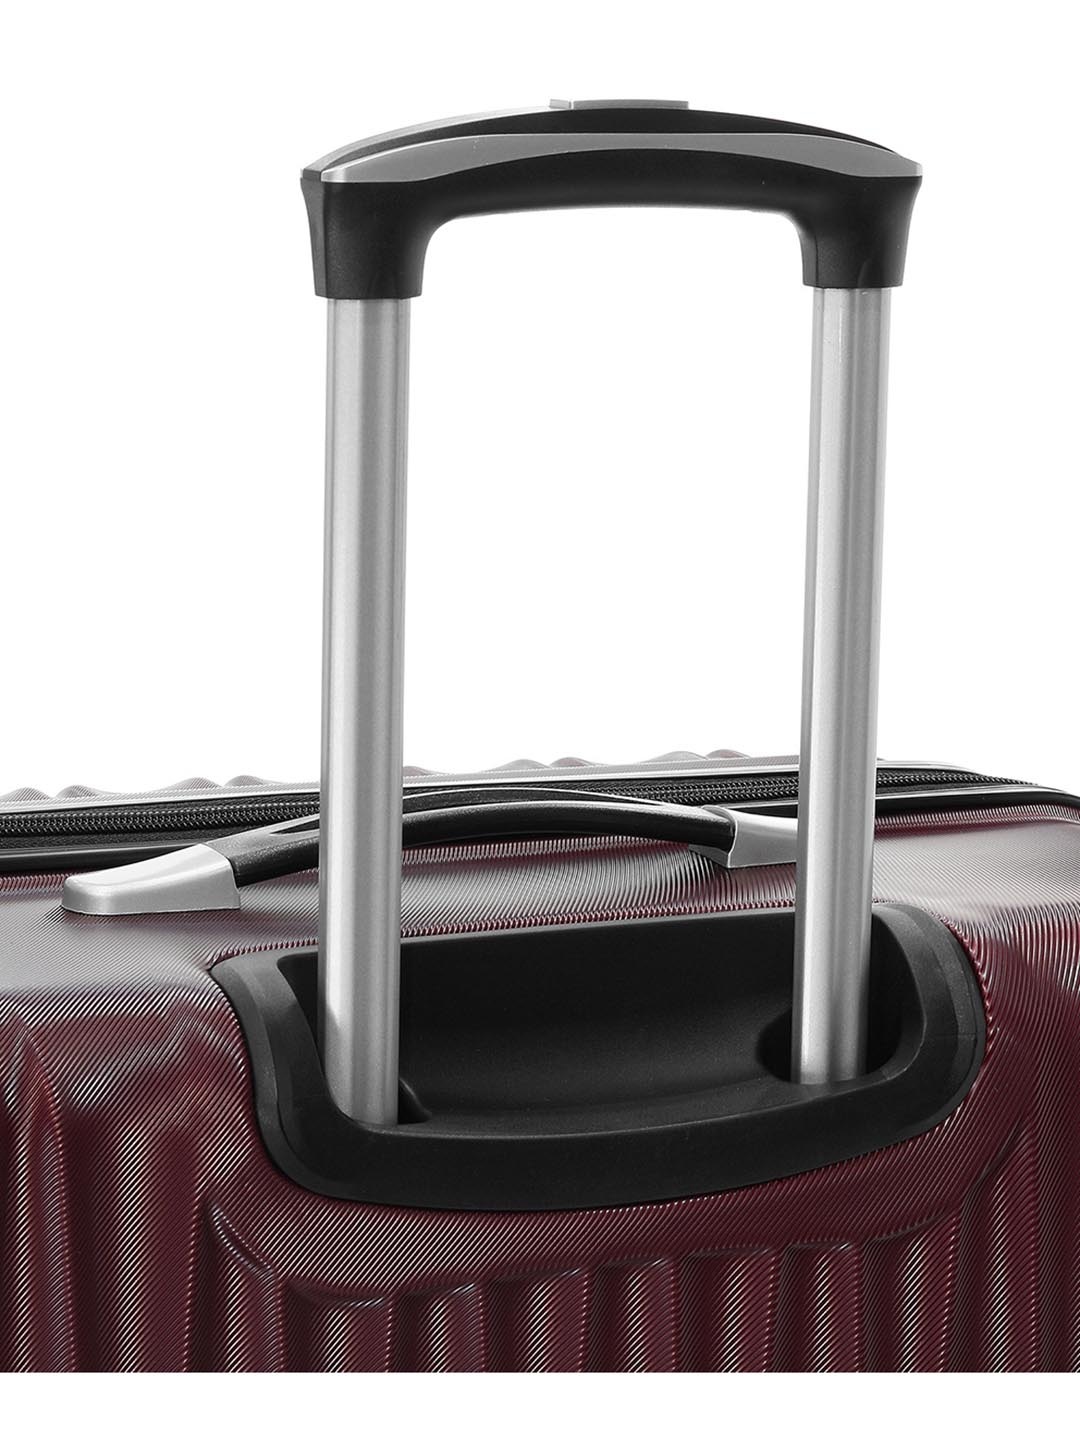 Фото Большой чемодан на колесах из рифленого ABS пластика бордового цвета Чемоданы